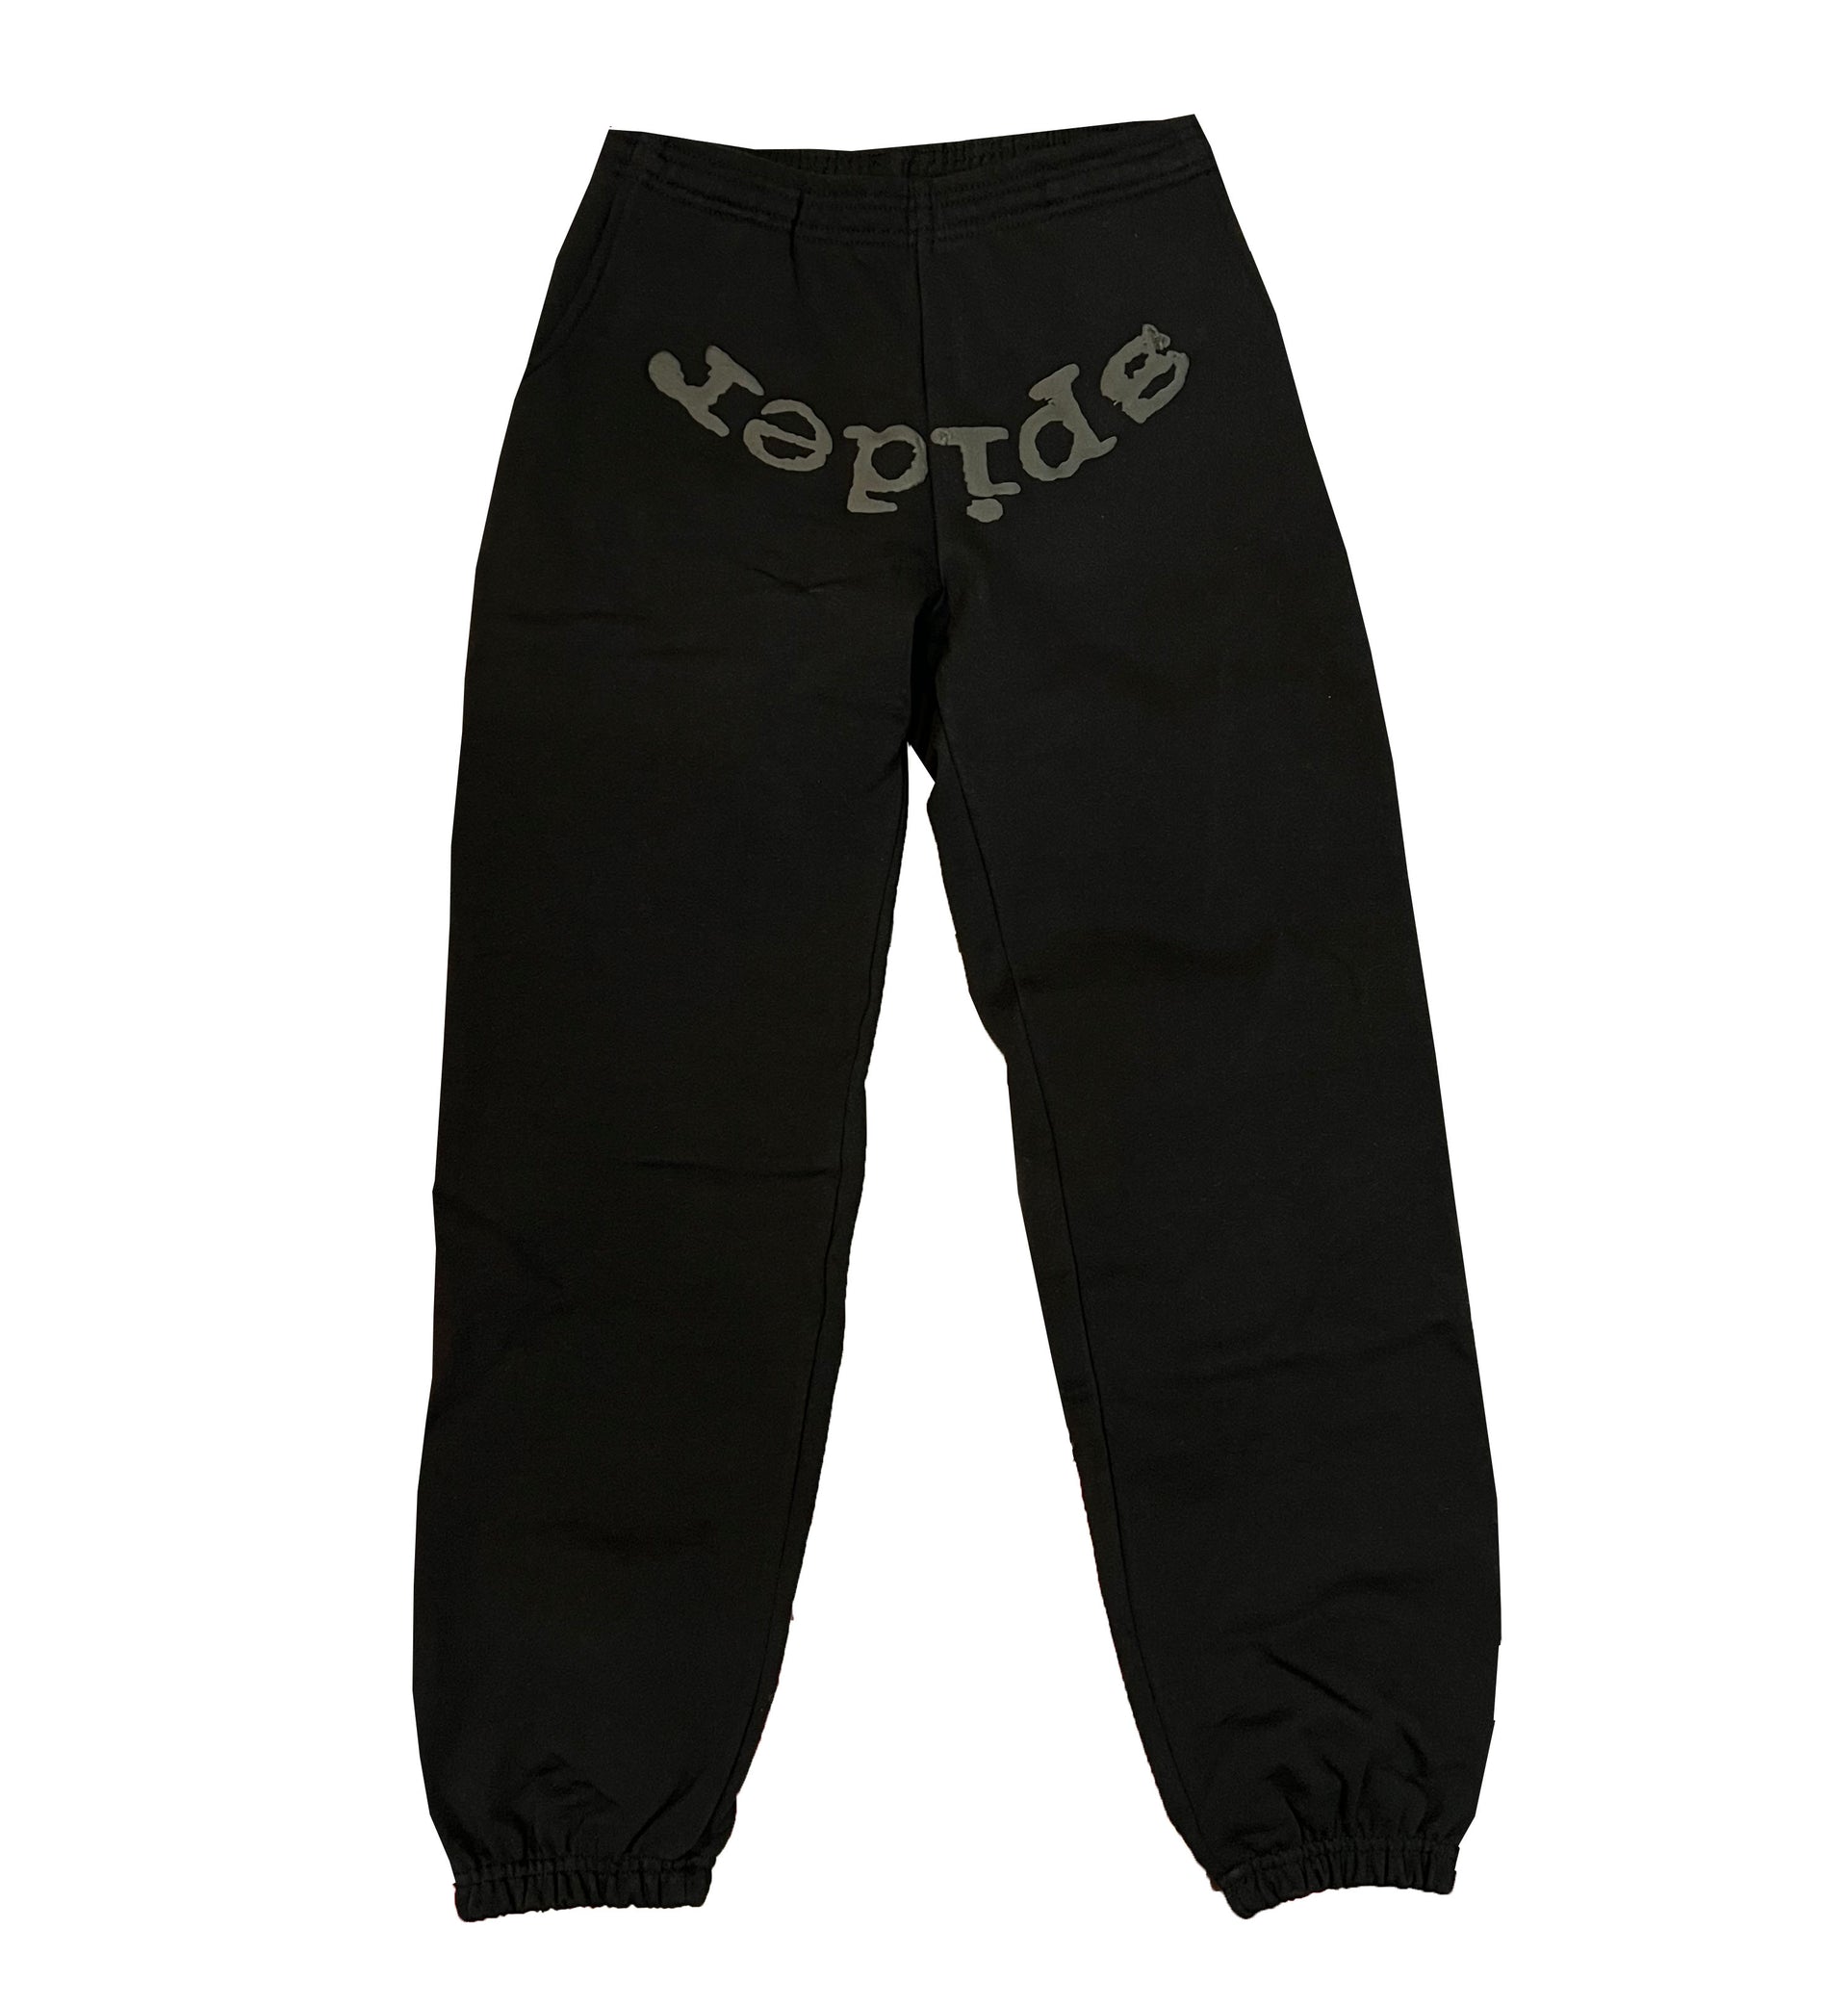 Sp5der Worldwide Pants Black – Outlined